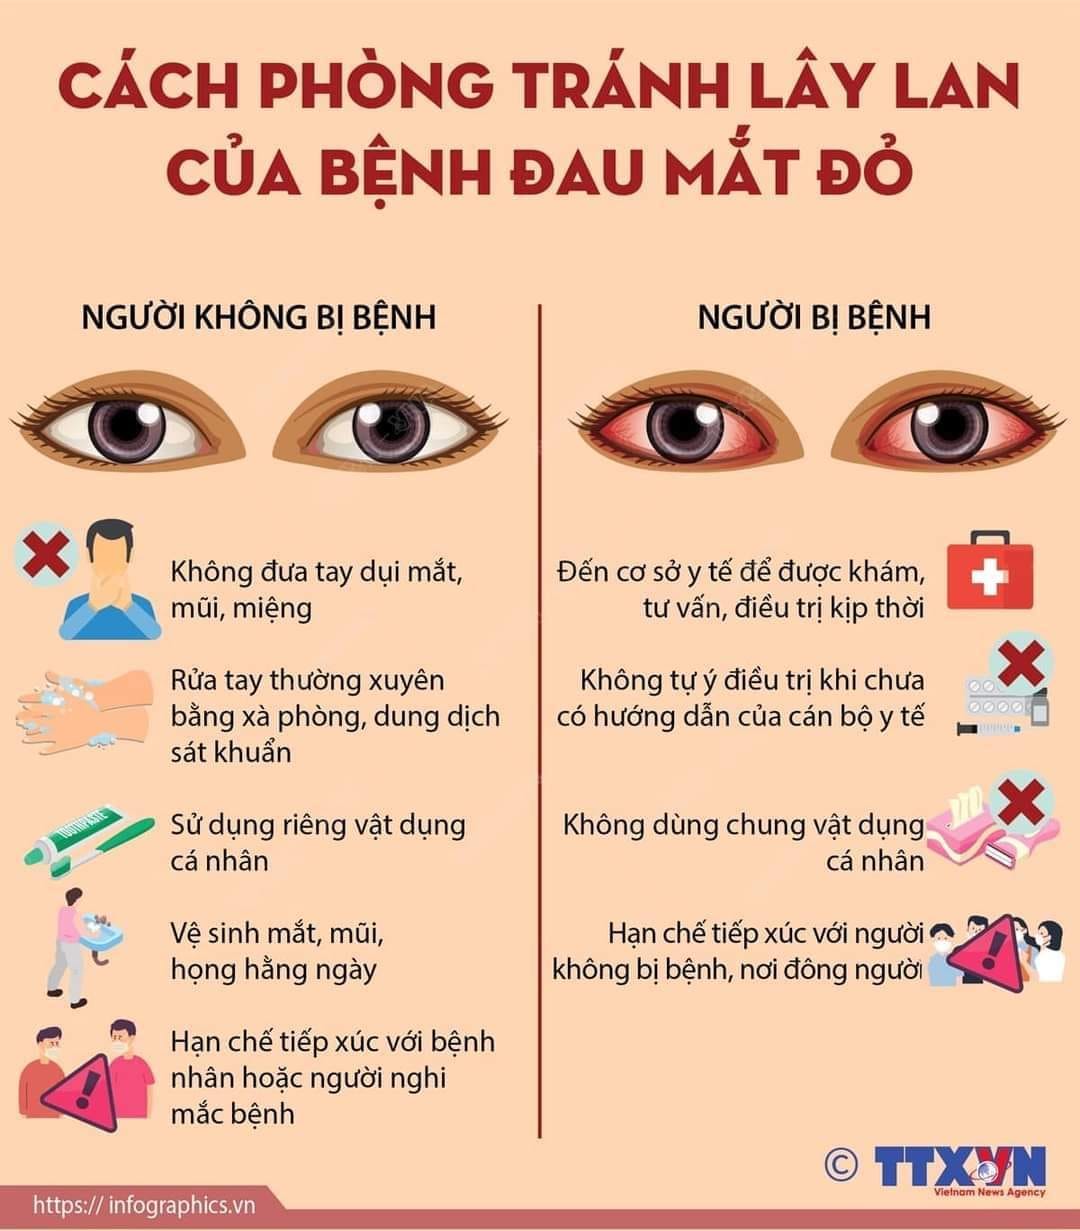 Cách phòng chống dịch đau mắt đỏ